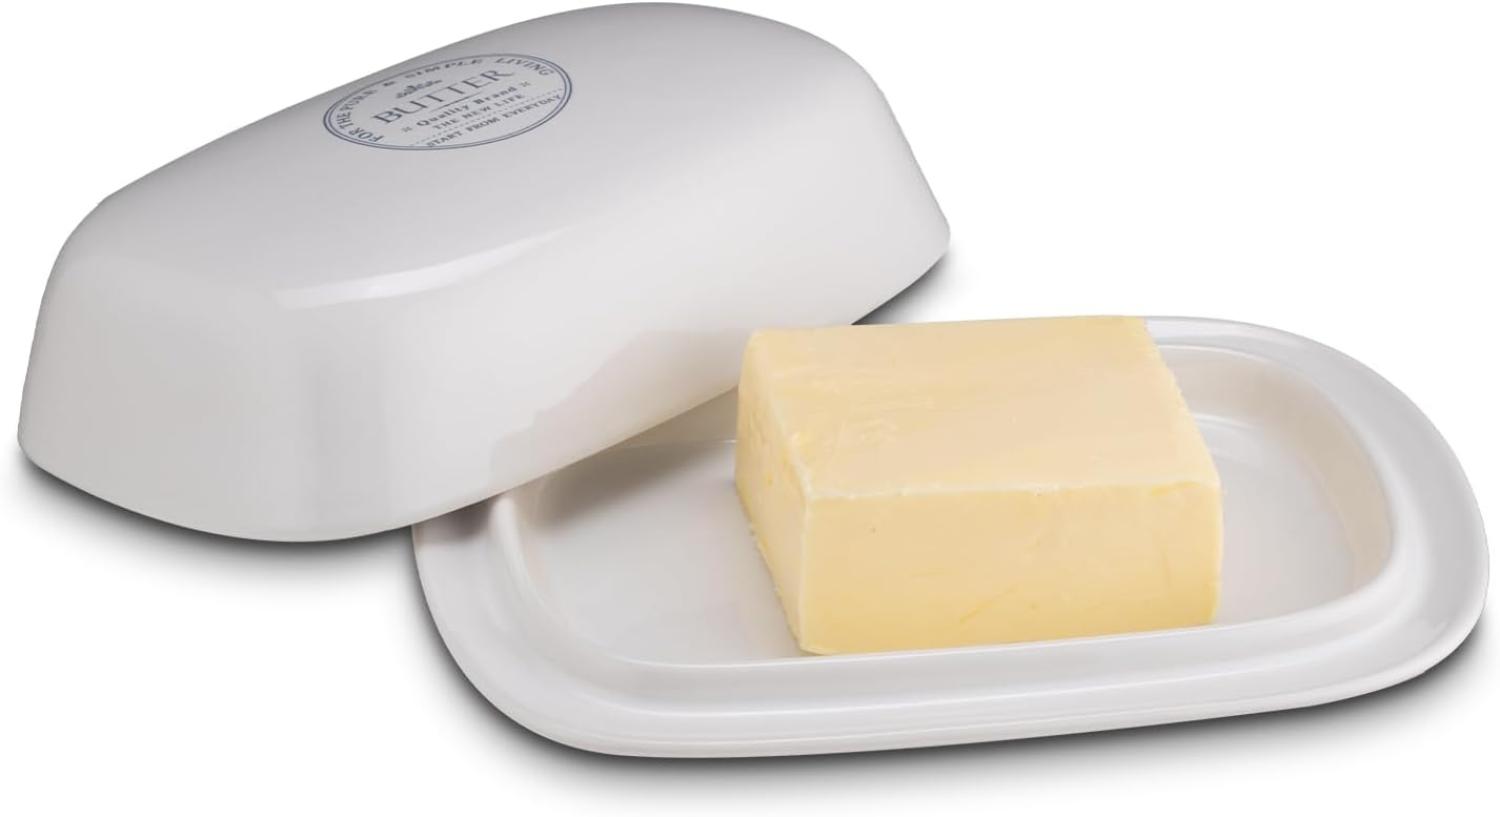 KHG Butterdose Keramik Steingut Weiß mit Beschriftung für 250g Butter, Aufbewahrung Butterbehälter, Deckel opak, Butterbox rechteckig & glasiert mit Emaille, spülmaschinengeeignet Bild 1